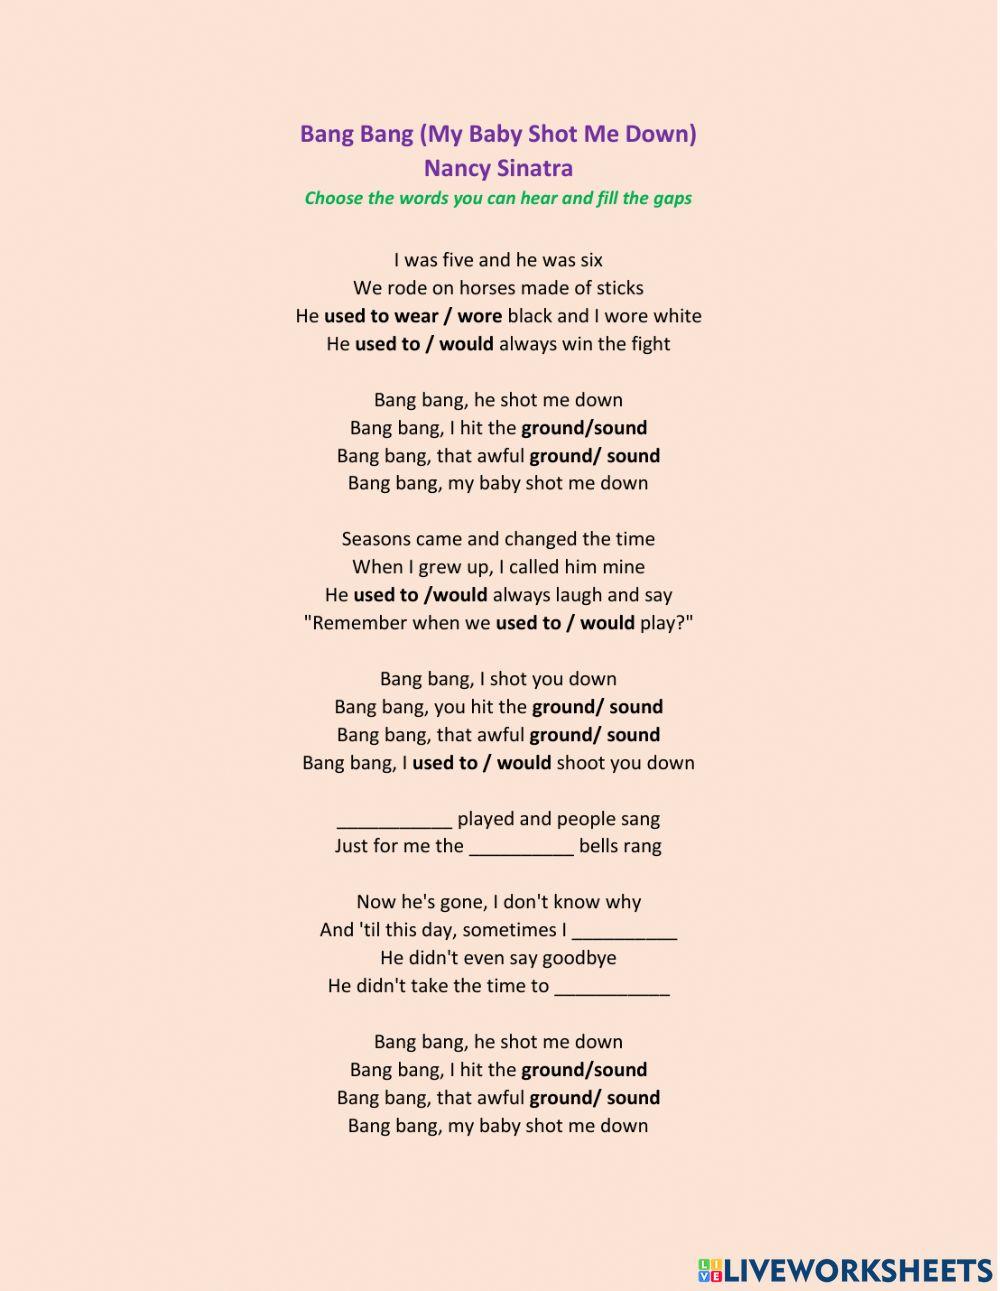 Bang Bang (My Baby Shot Me Down) by Nancy Sinatra worksheet | Live  Worksheets